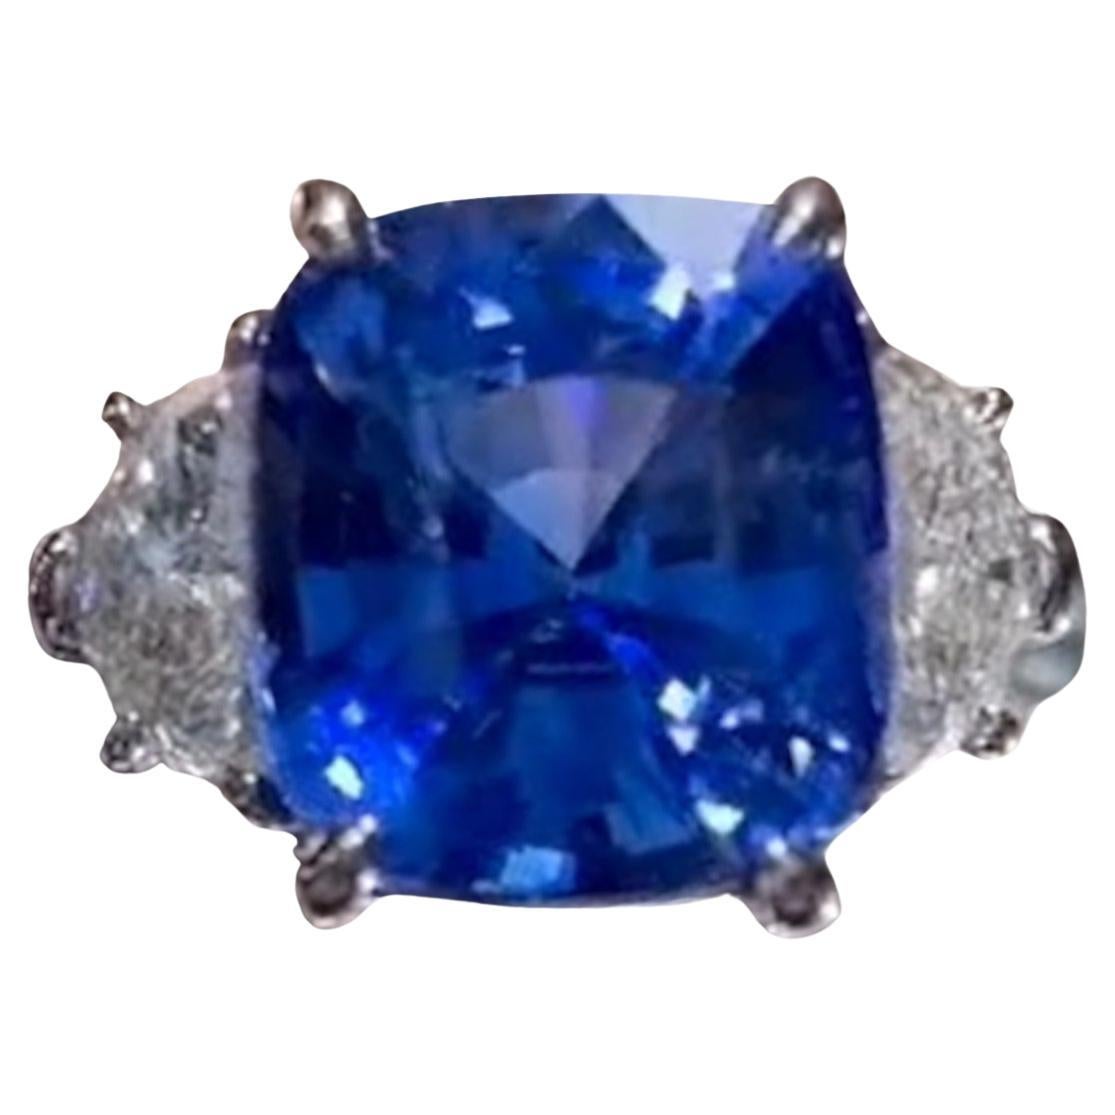 GII 5,28 zertifizierter Saphir hat eine lebhafte blaue Farbe